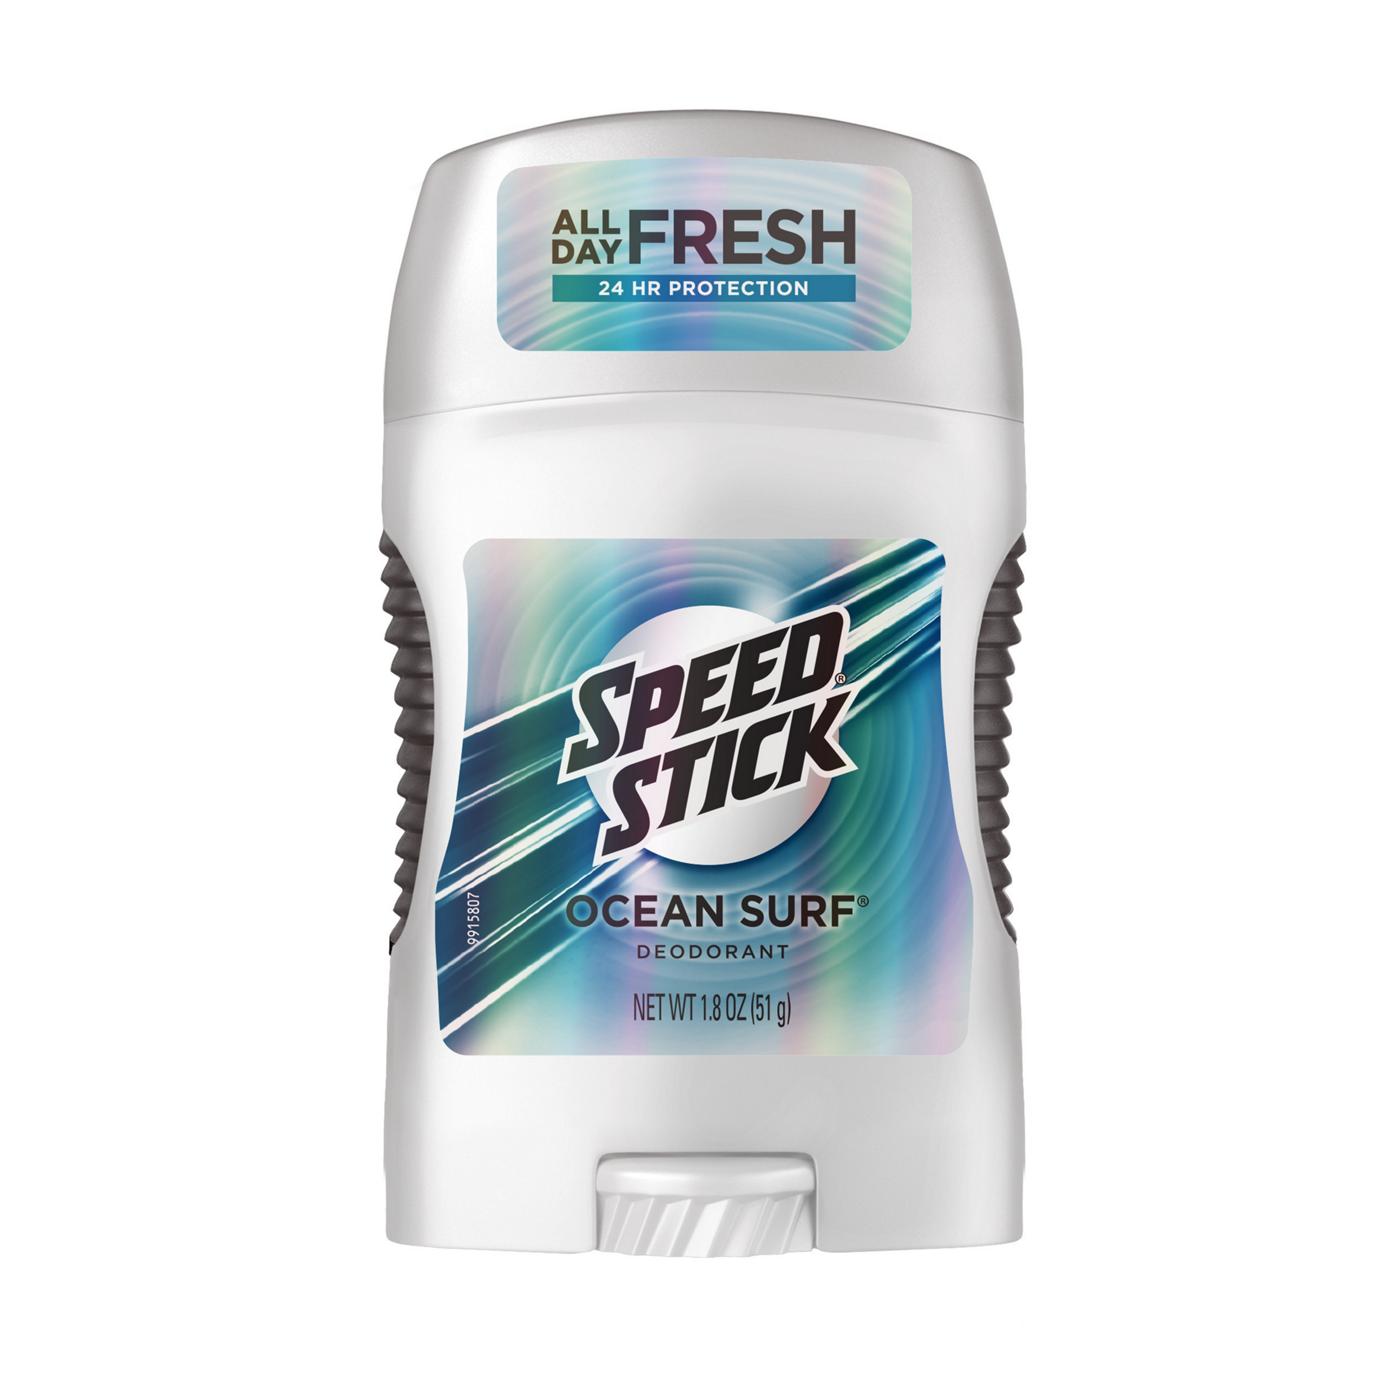 Speed Stick Ocean Surf Deodorant; image 1 of 10